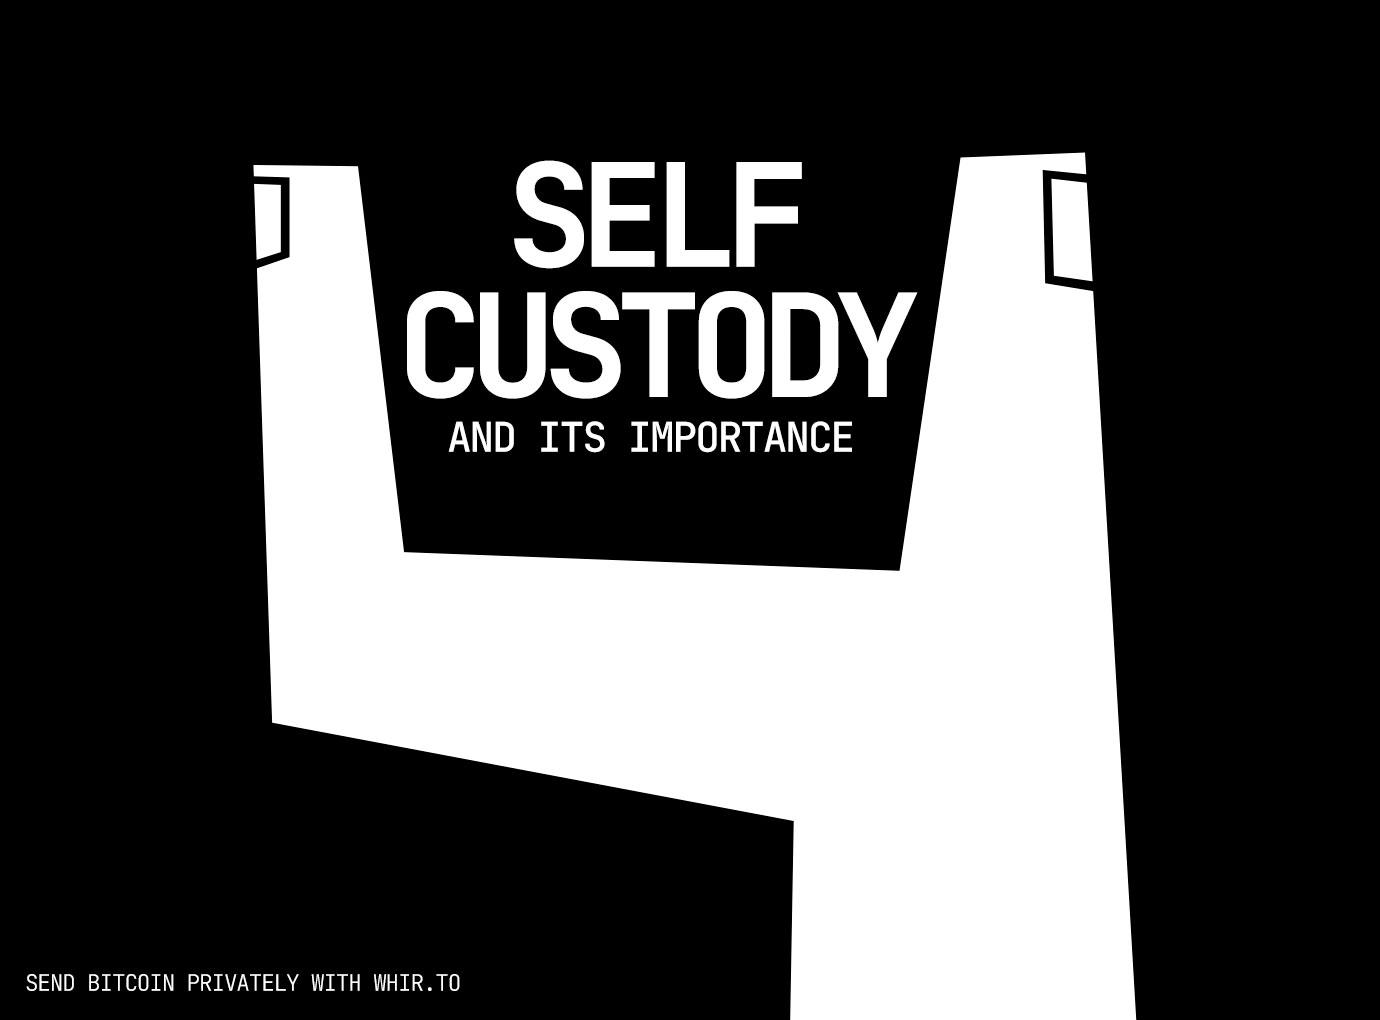 Bitcoin self-custody